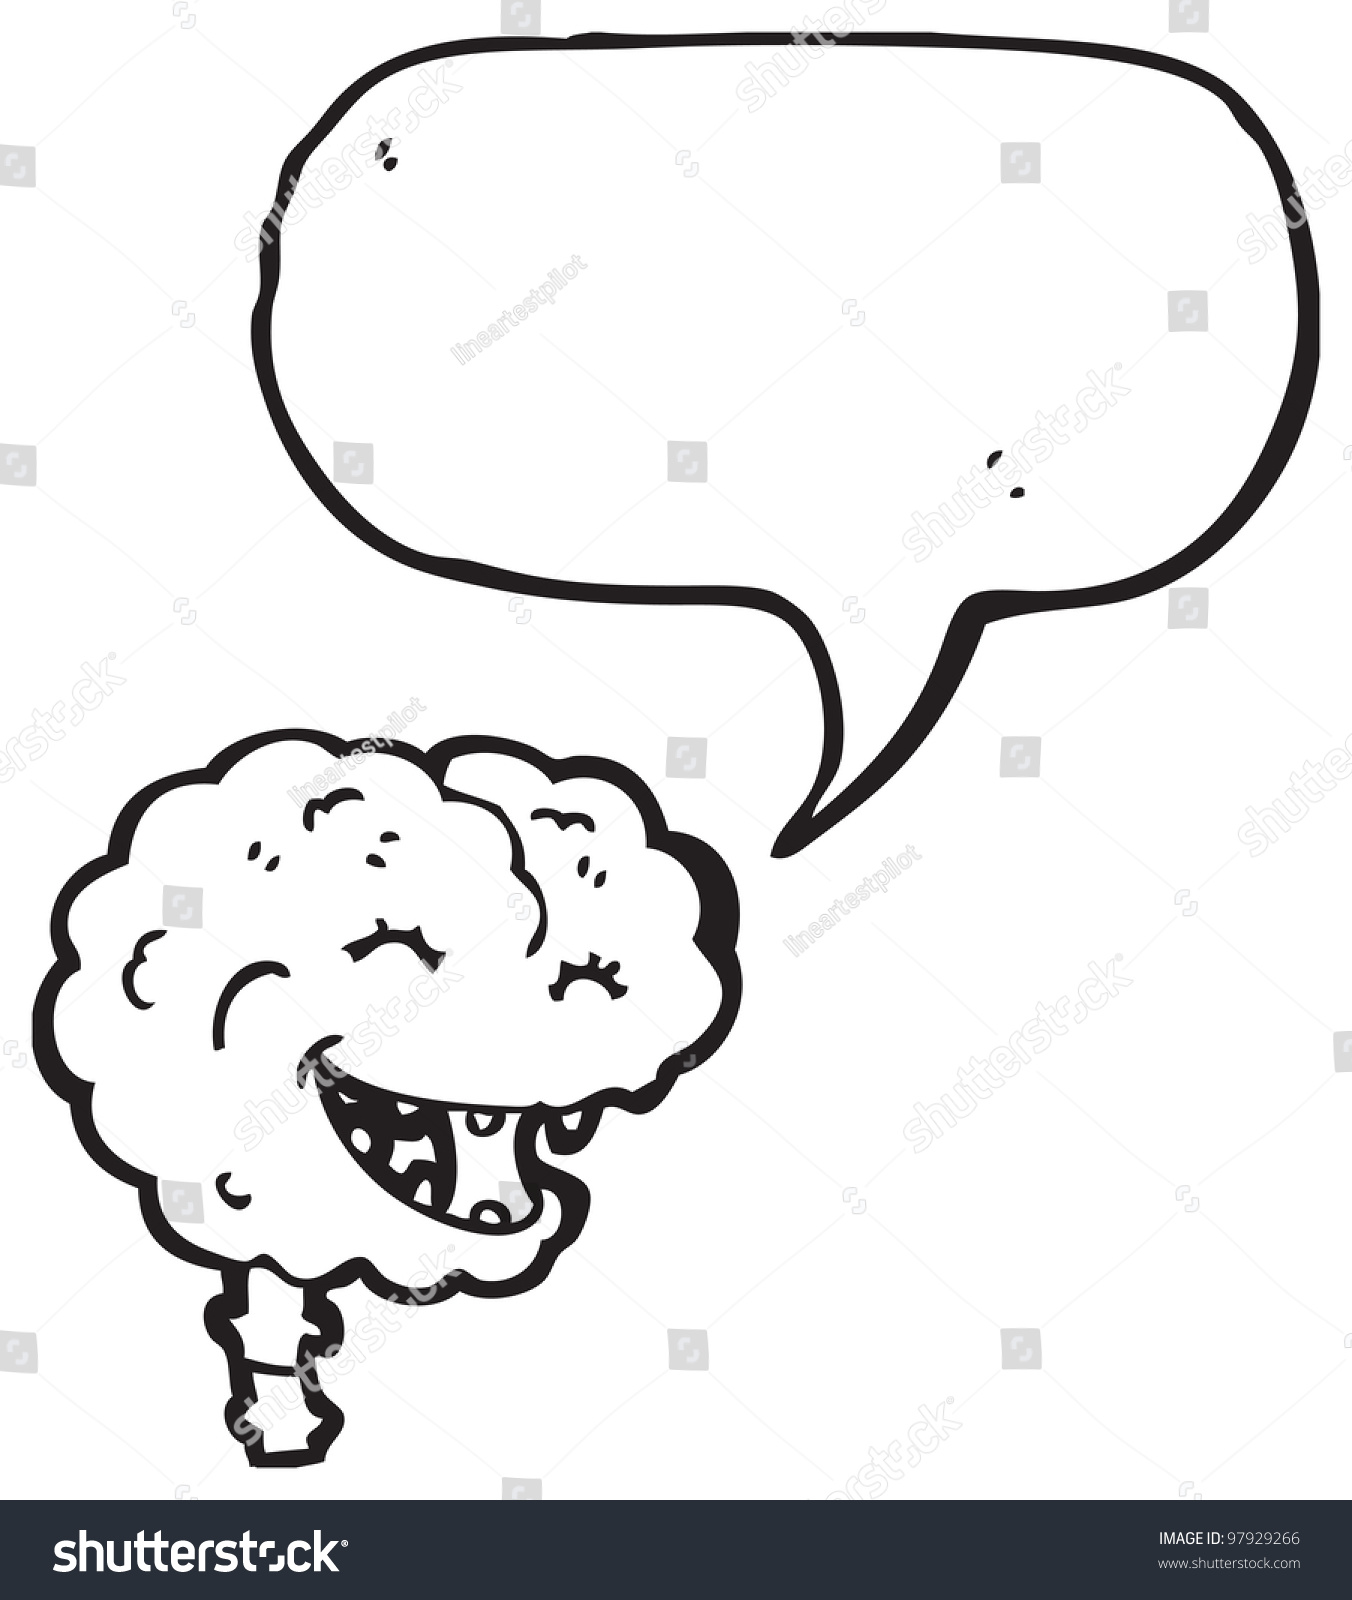 Laughing Brain Cartoon Stock Photo 97929266 : Shutterstock